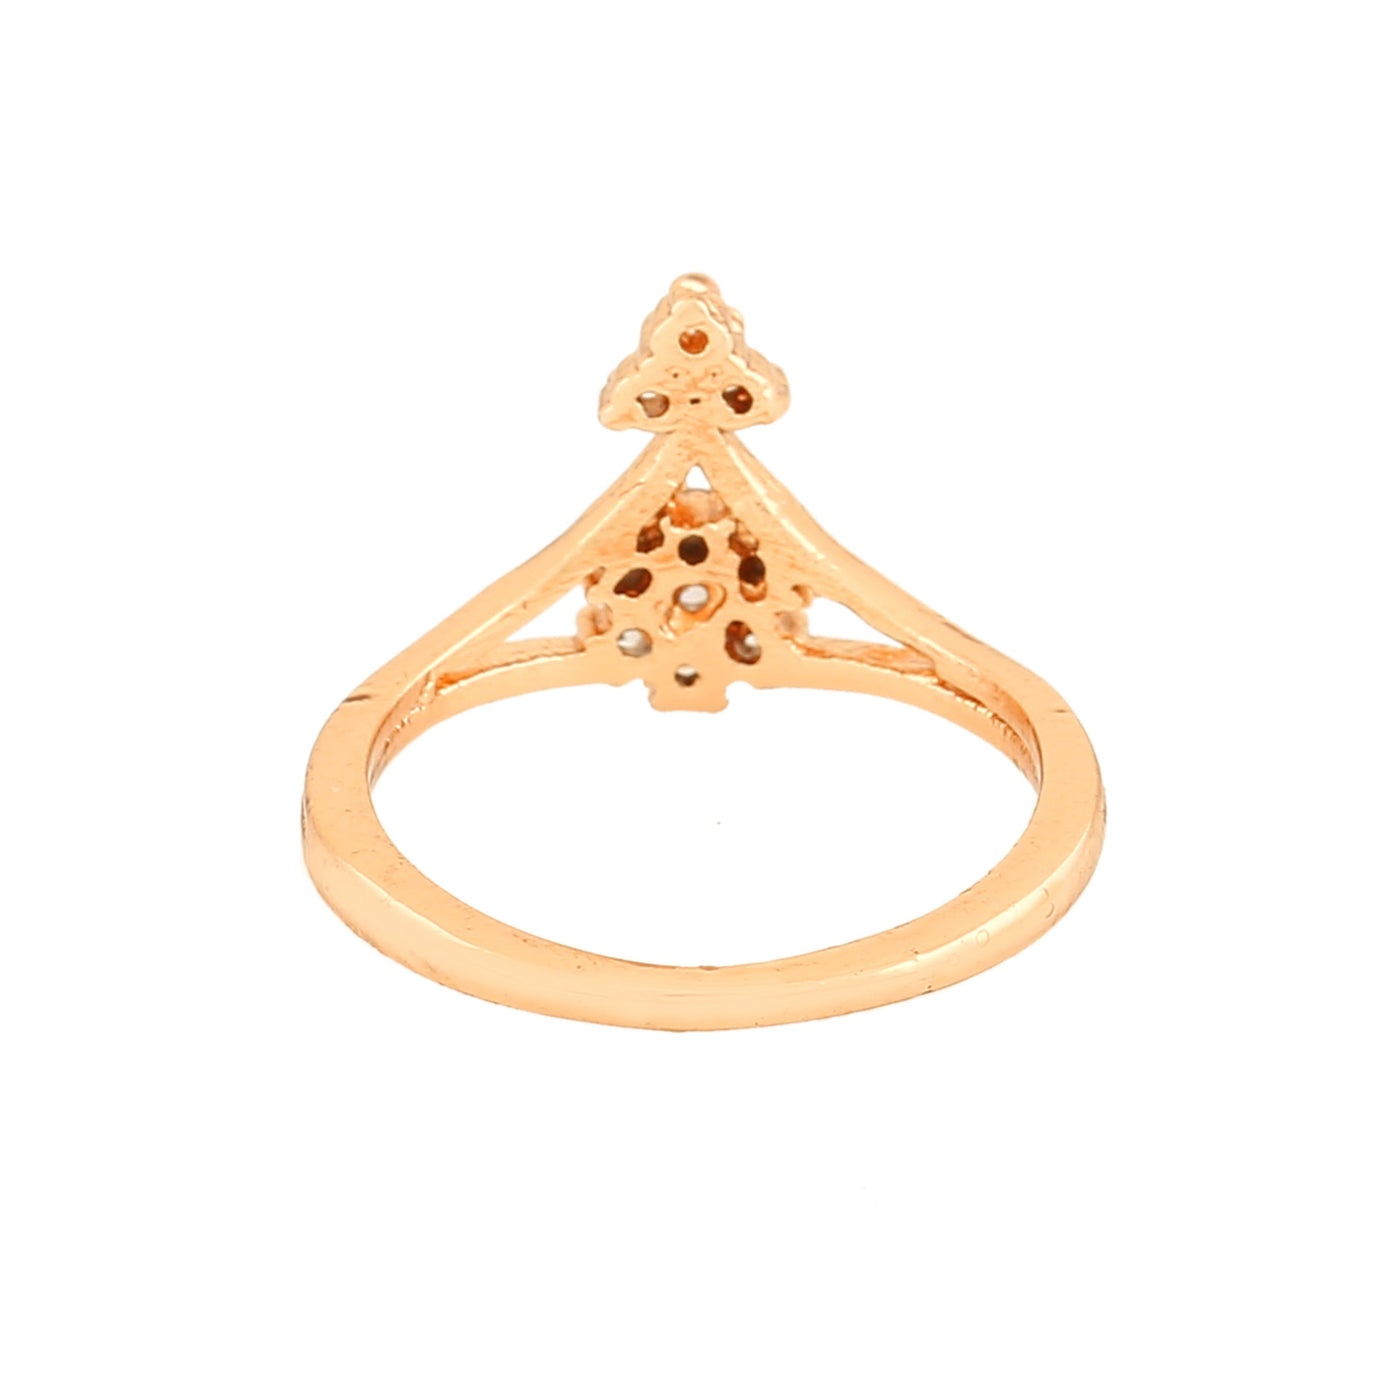 Estele Rose Gold Plated CZ Flower Shaped Finger Ring for Women